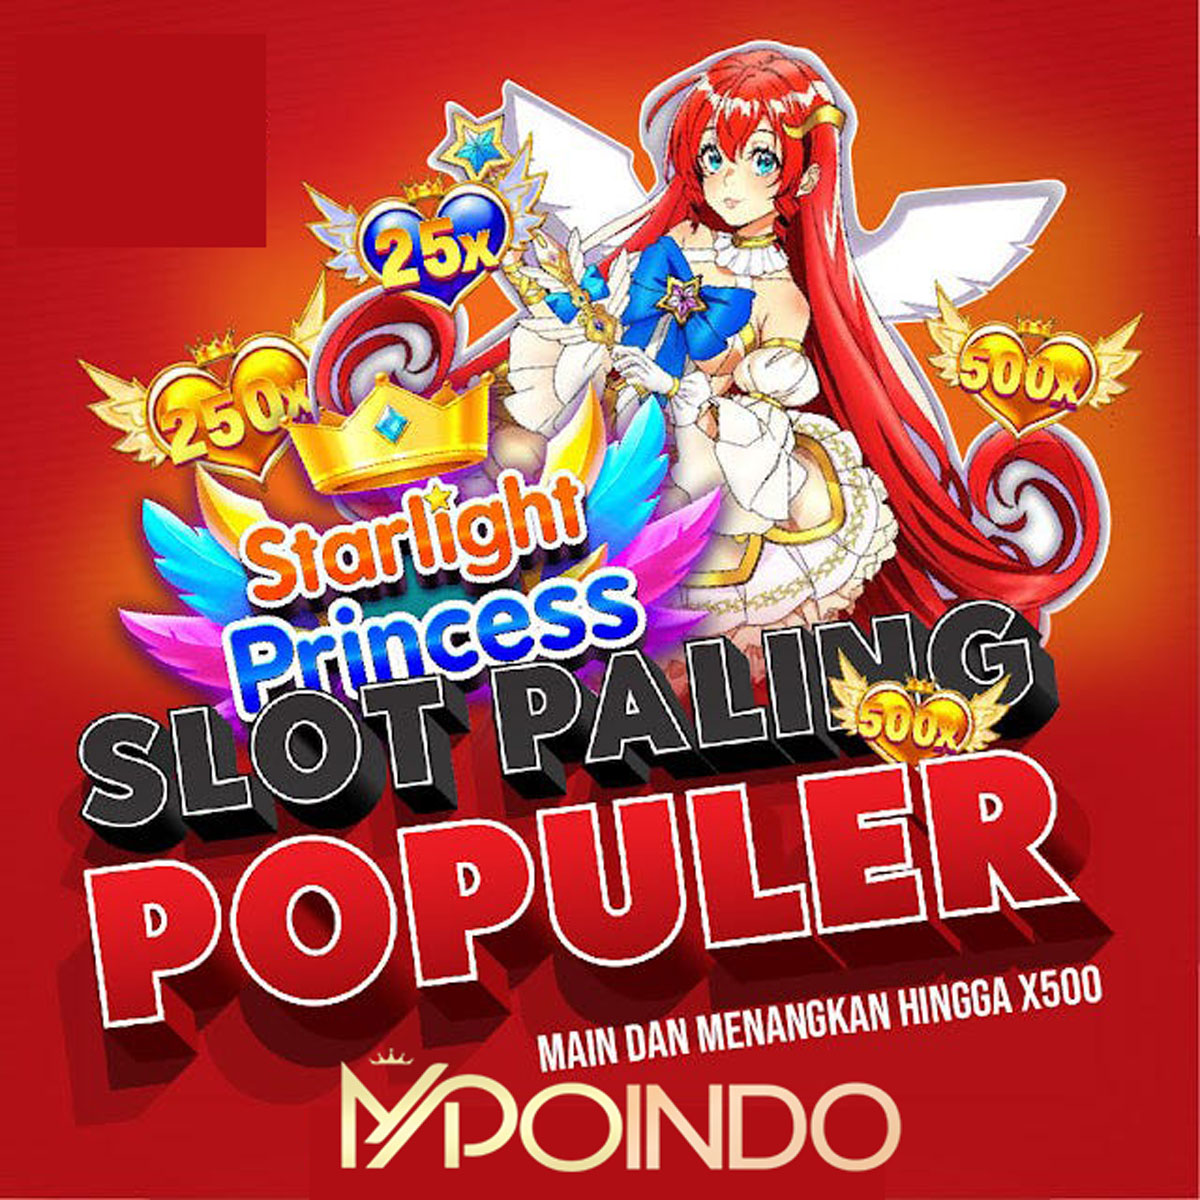 MPOINDO mainkan starlight princess X500